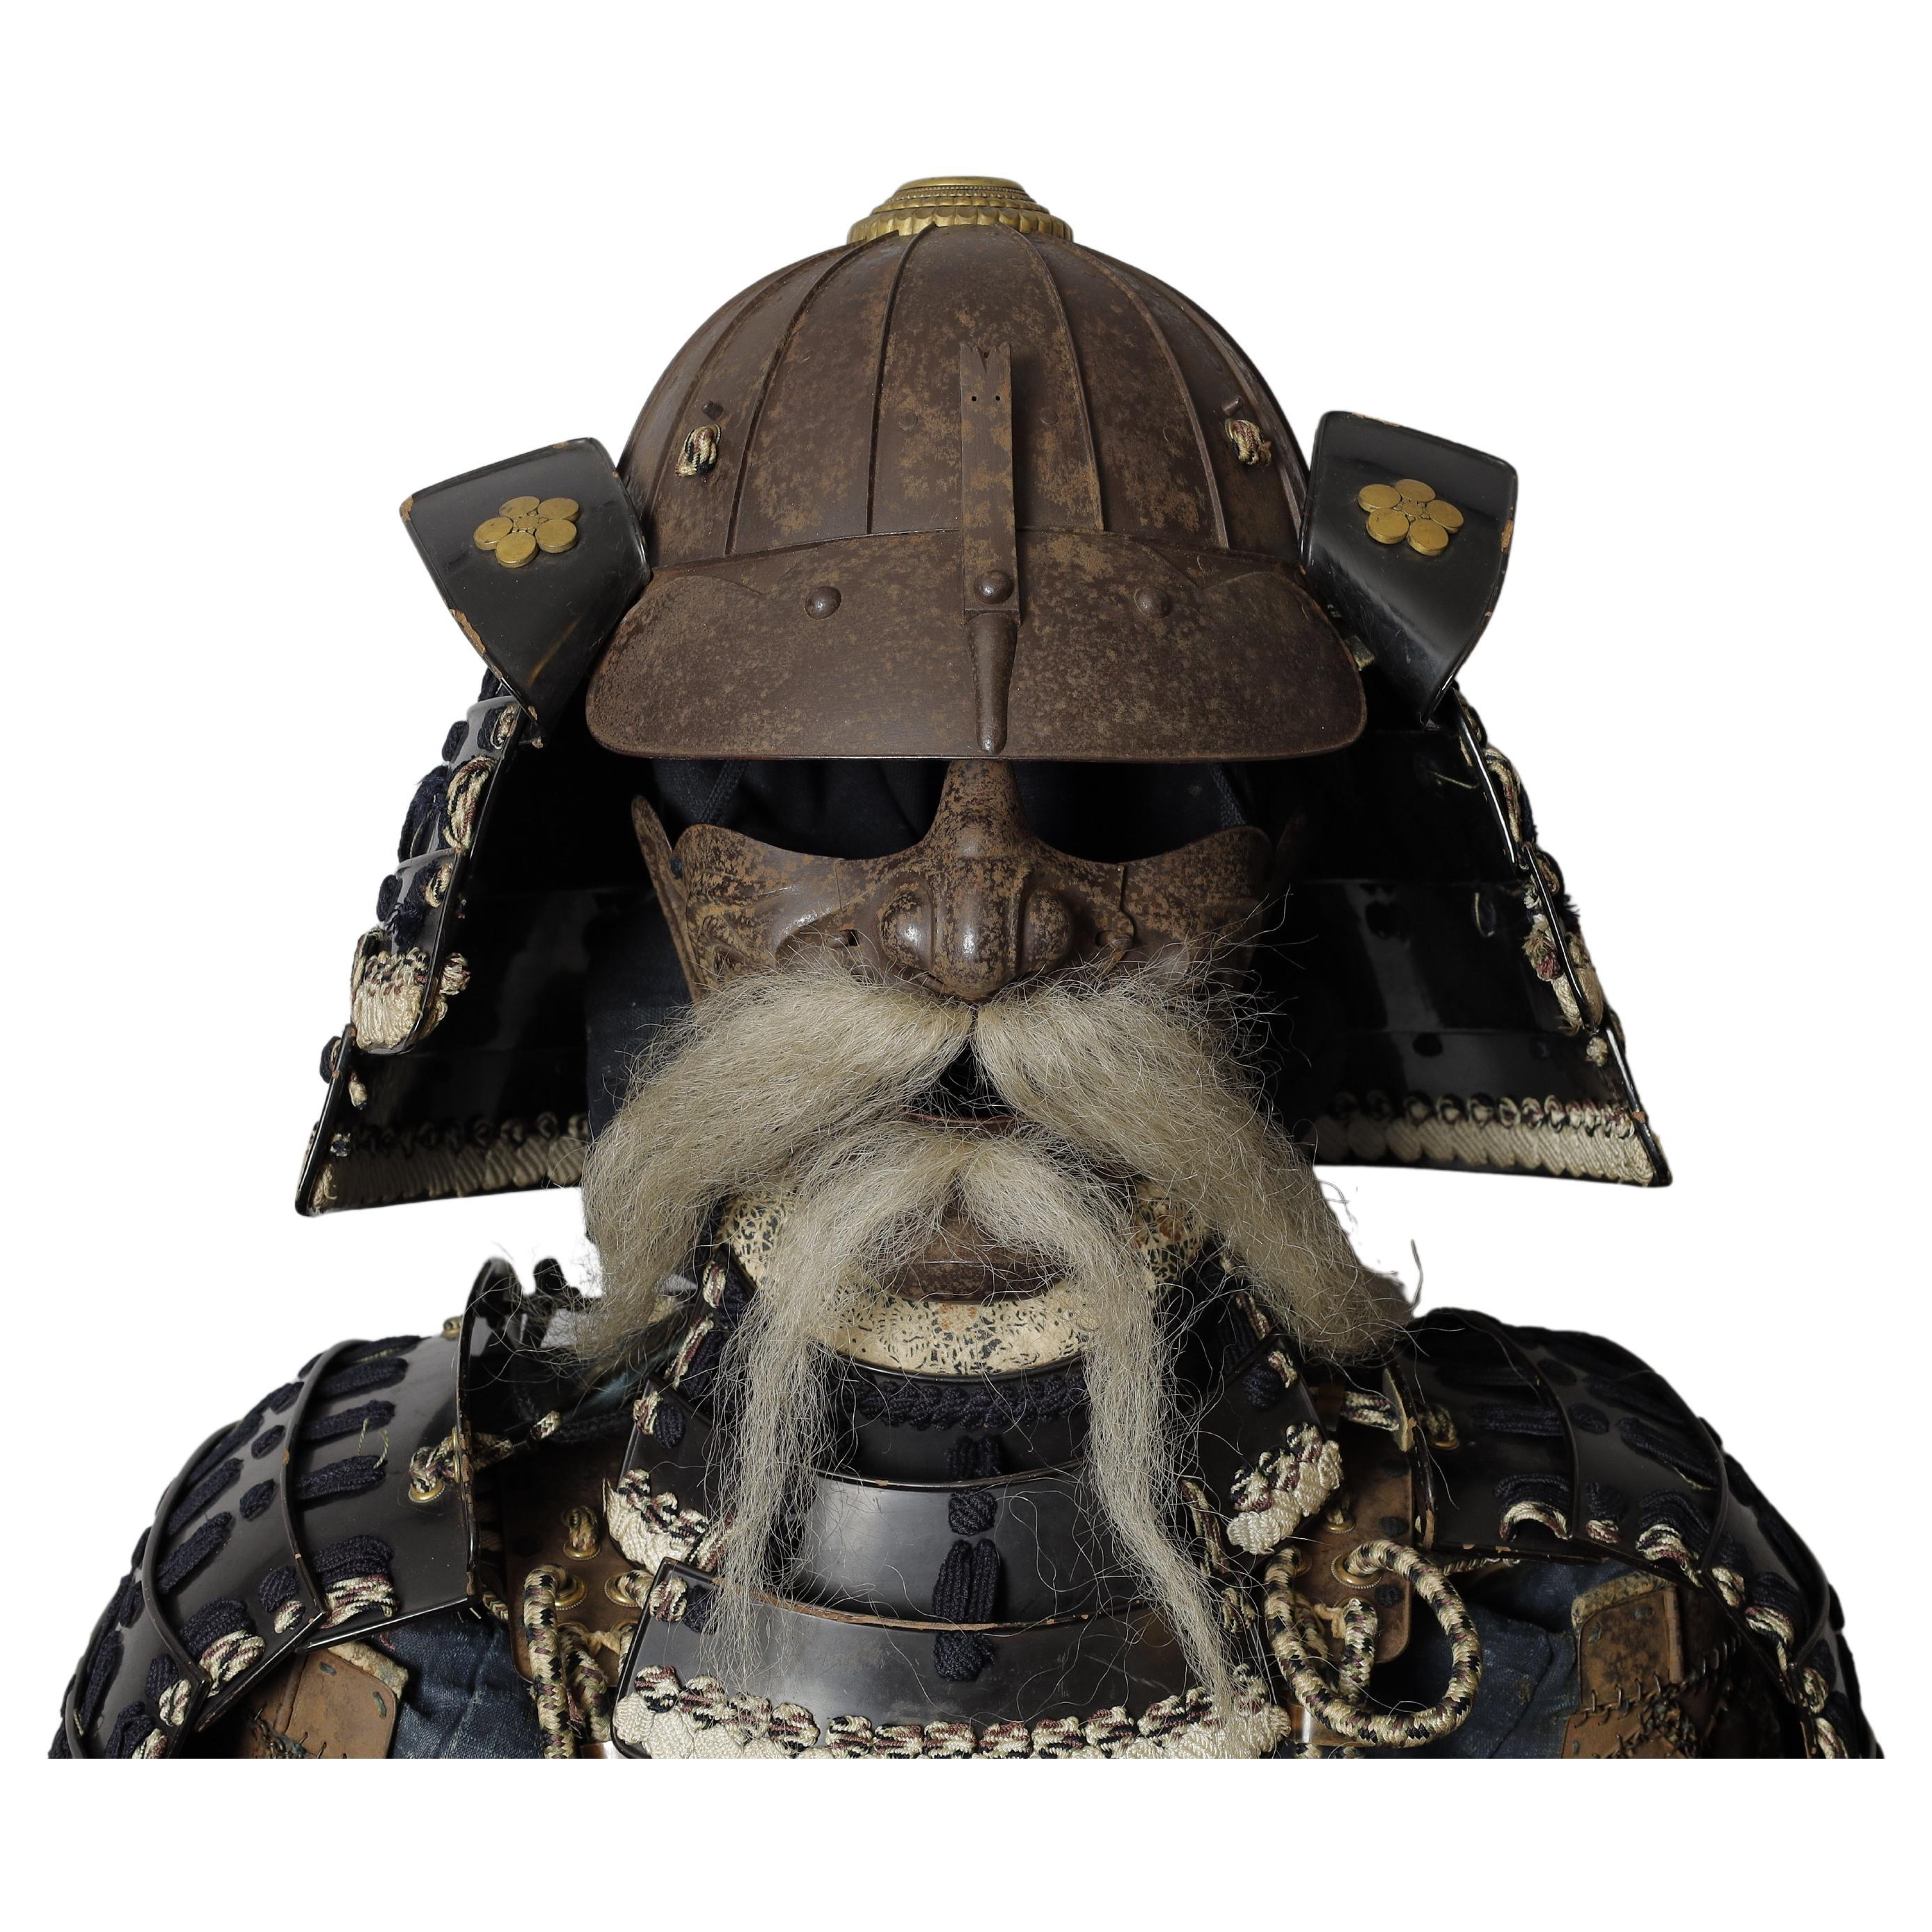 Ensemble complet d'armoiries samouraïs de la période Edo (yoroi) avec casque original unique